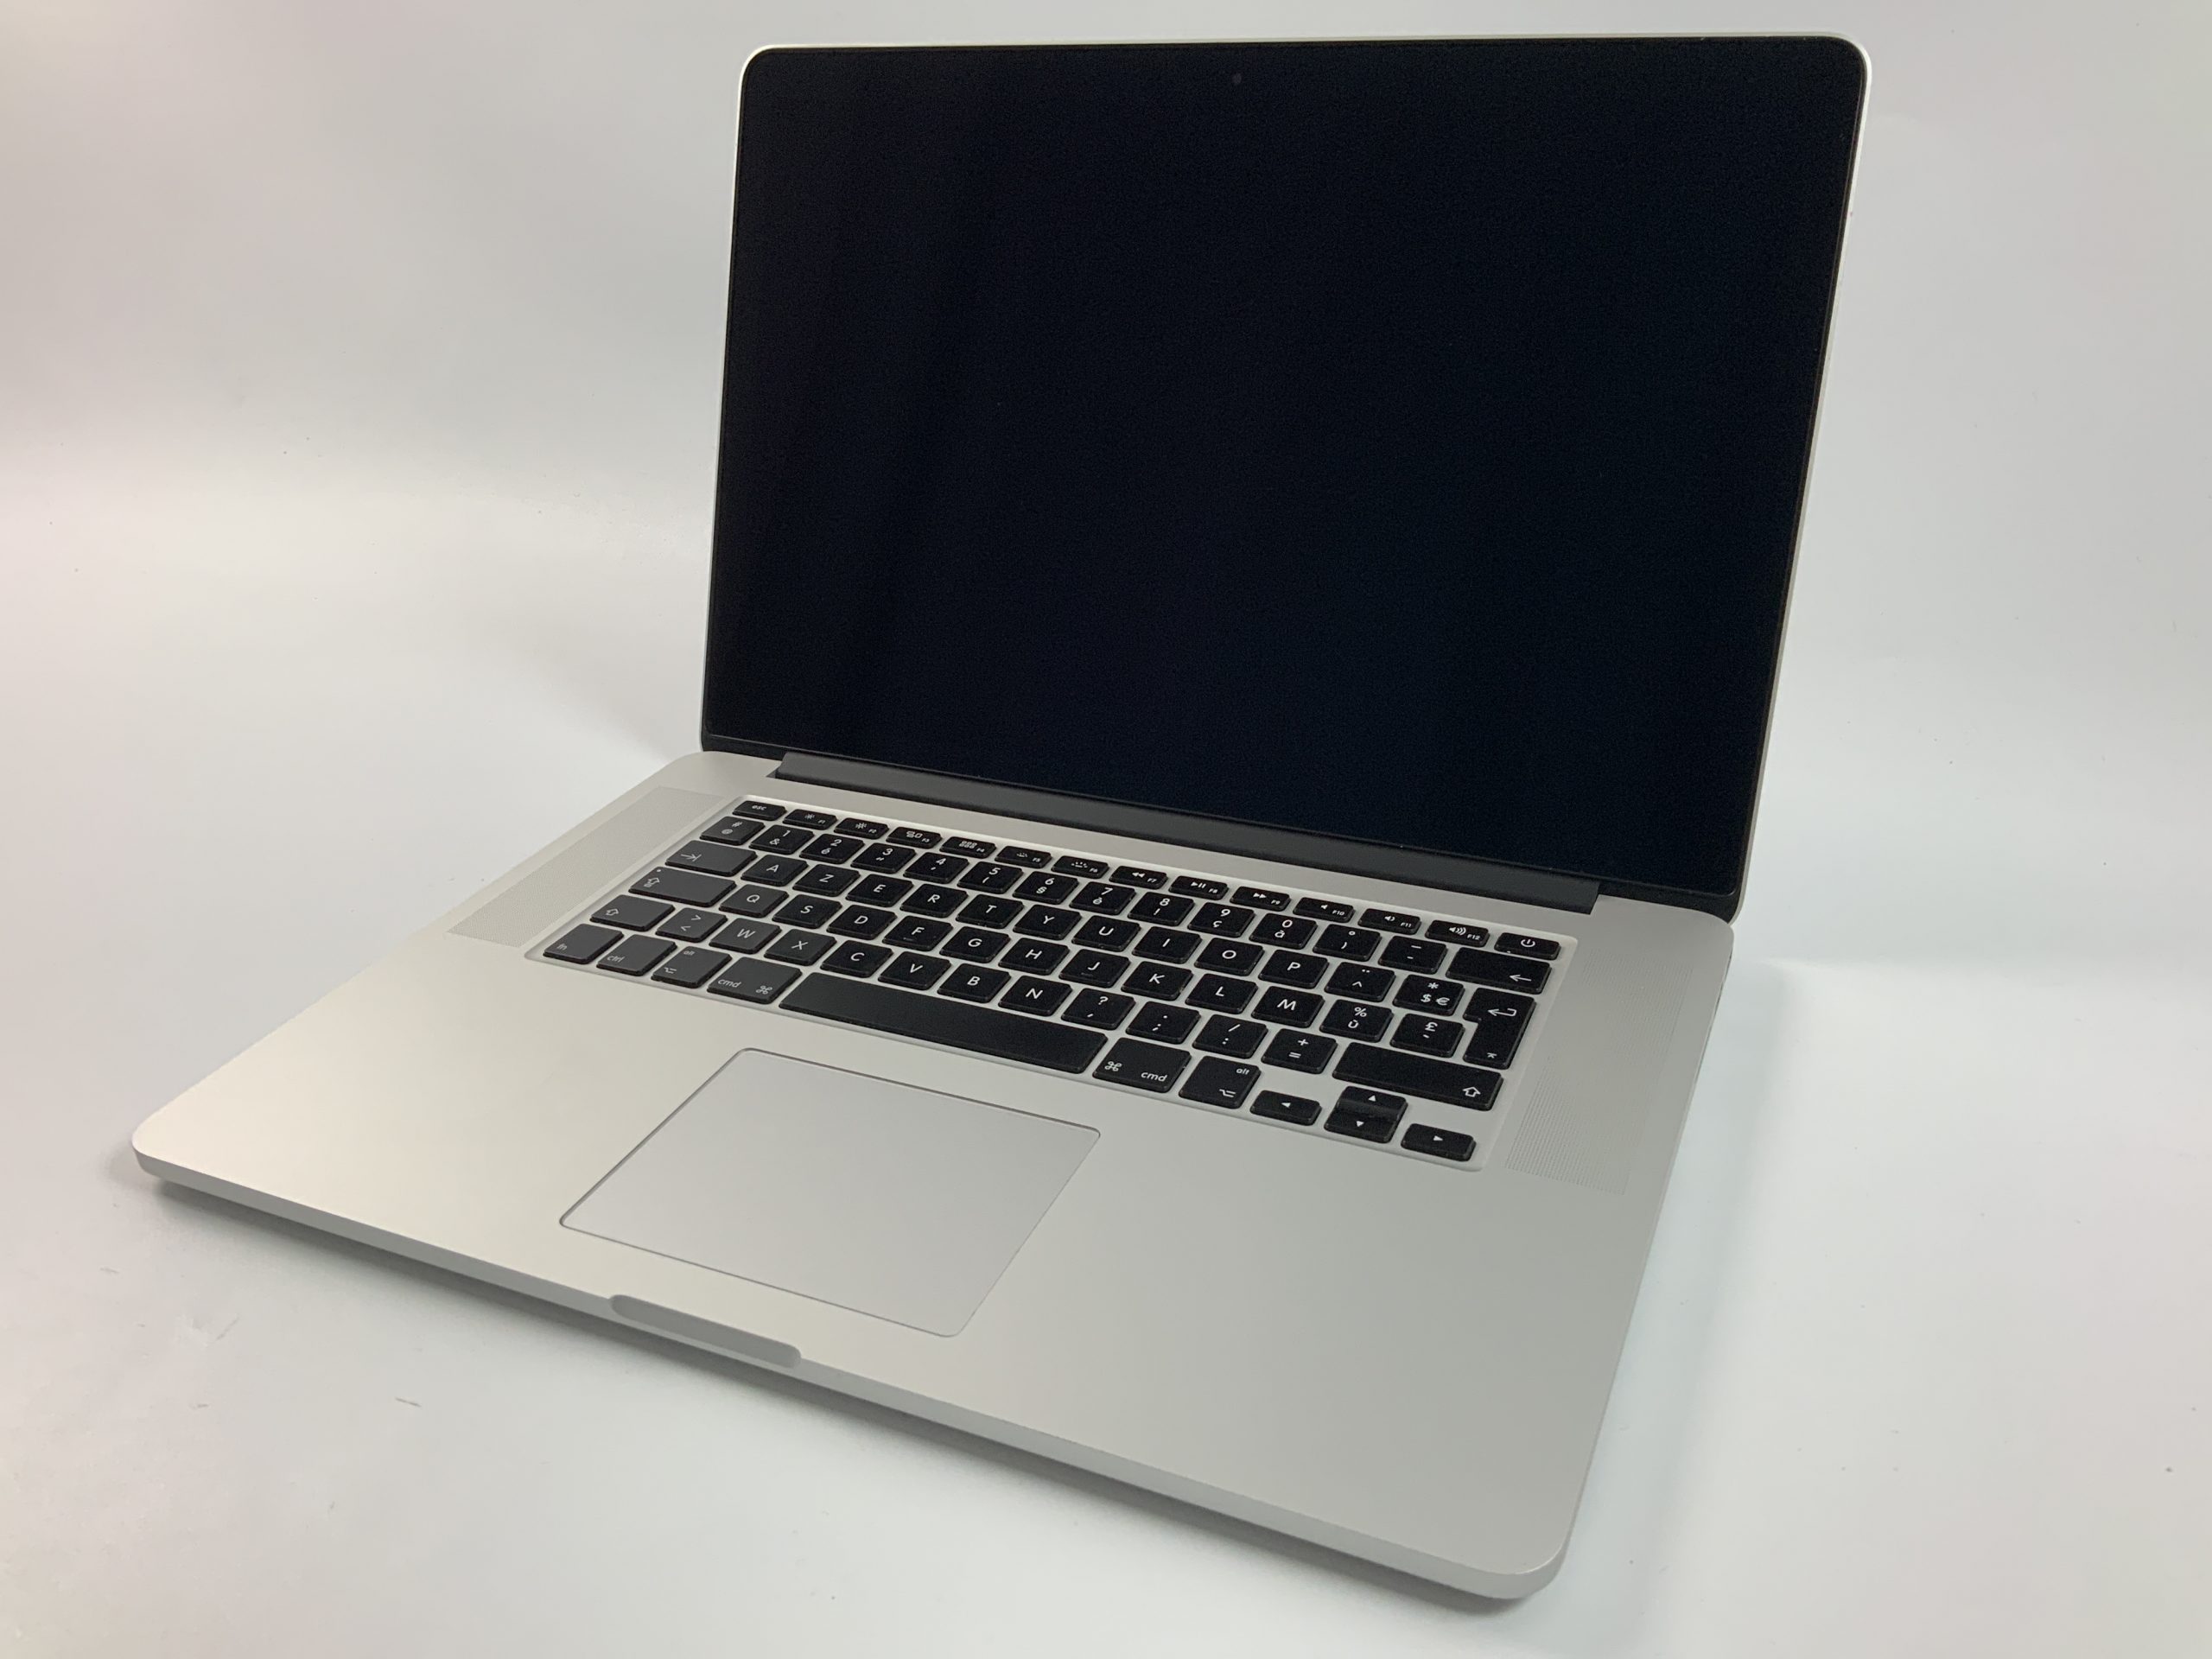 MacBook Pro Retina 15" Mid 2015 (Intel Quad-Core i7 2.8 GHz 16 GB RAM 512 GB SSD), Intel Quad-Core i7 2.8 GHz, 16 GB RAM, 512 GB SSD, immagine 1